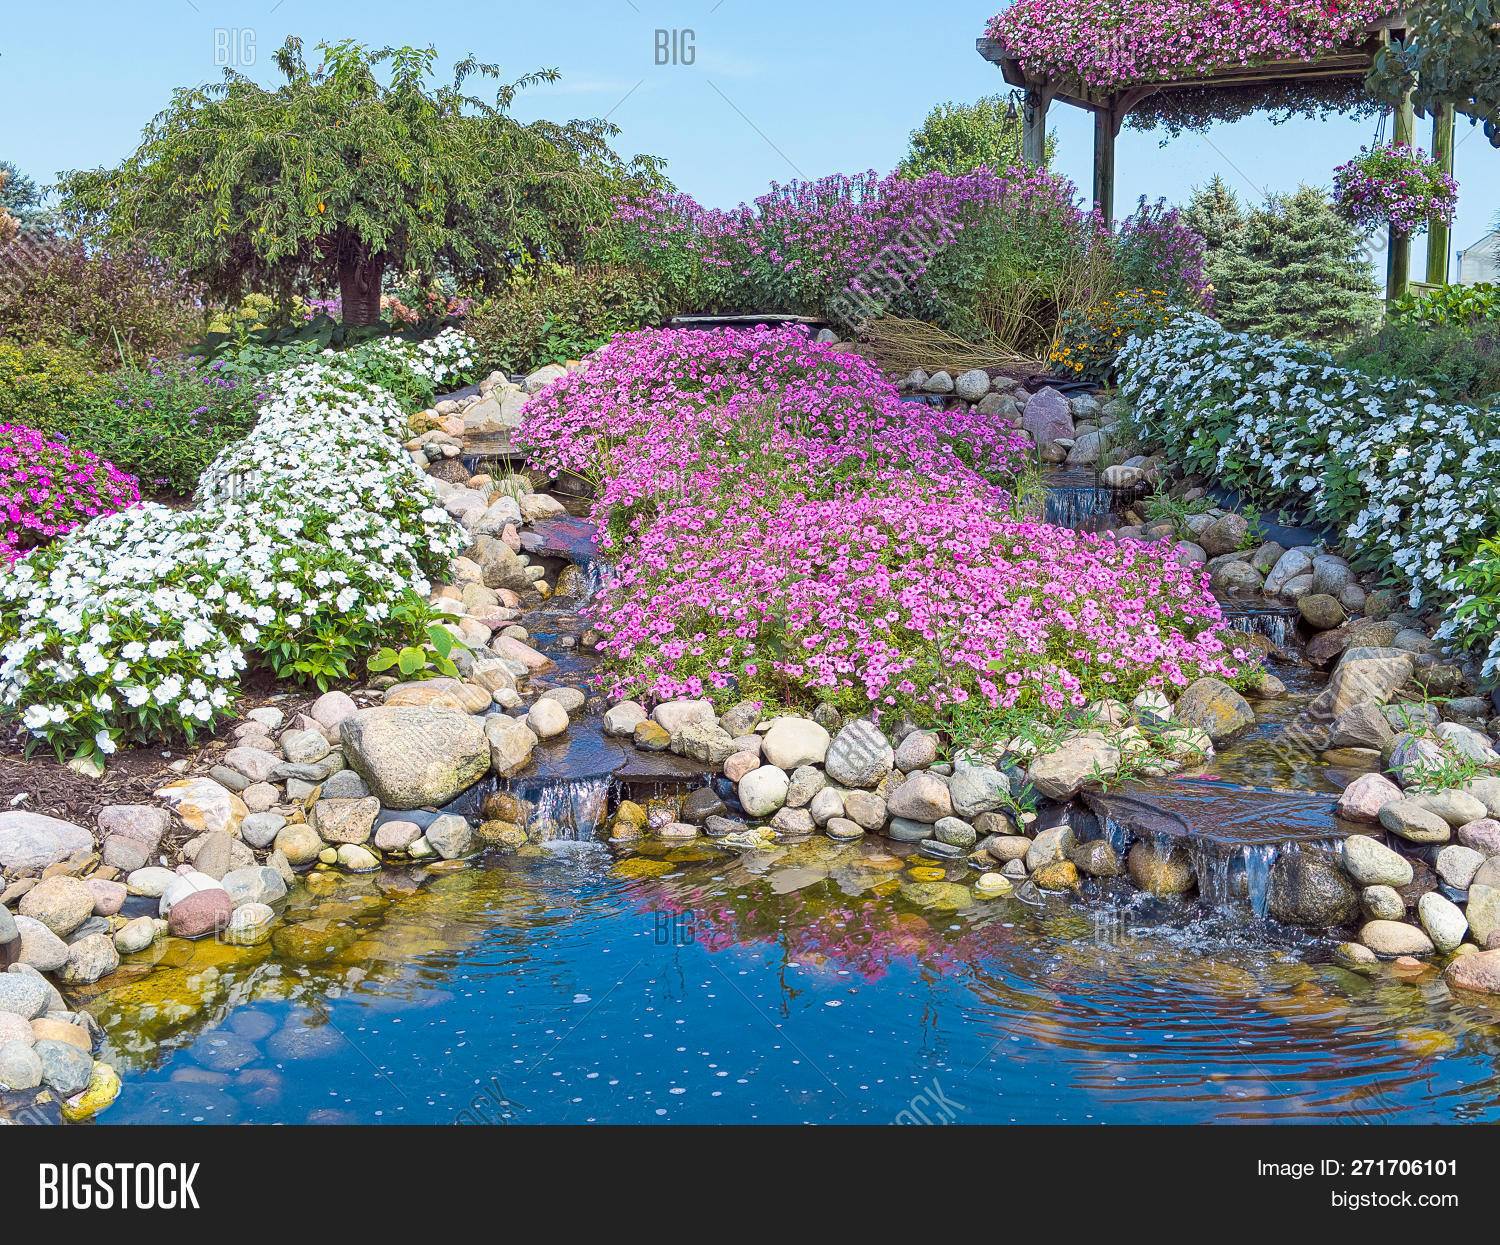 Schwimmpool Garten Best Of Water Pool ornamental Image & Free Trial